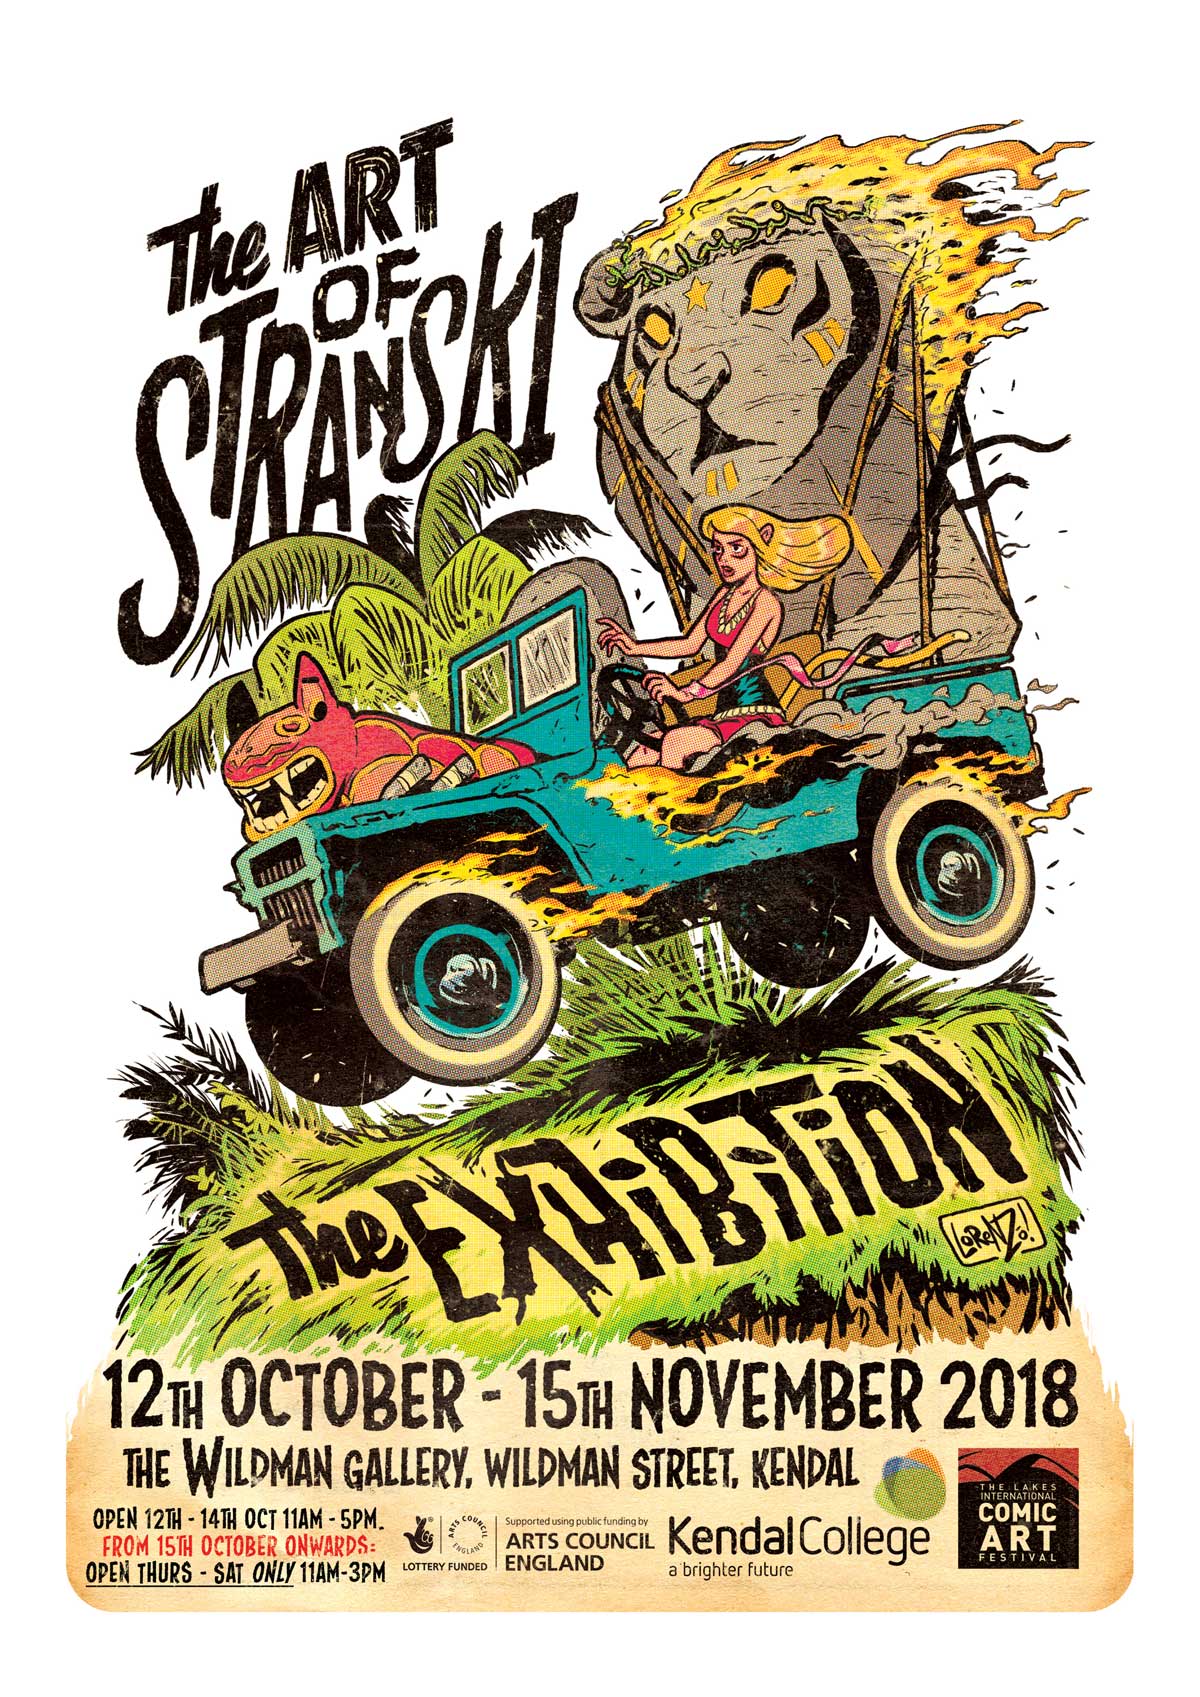 The Art of Stranski Exhibition Poster